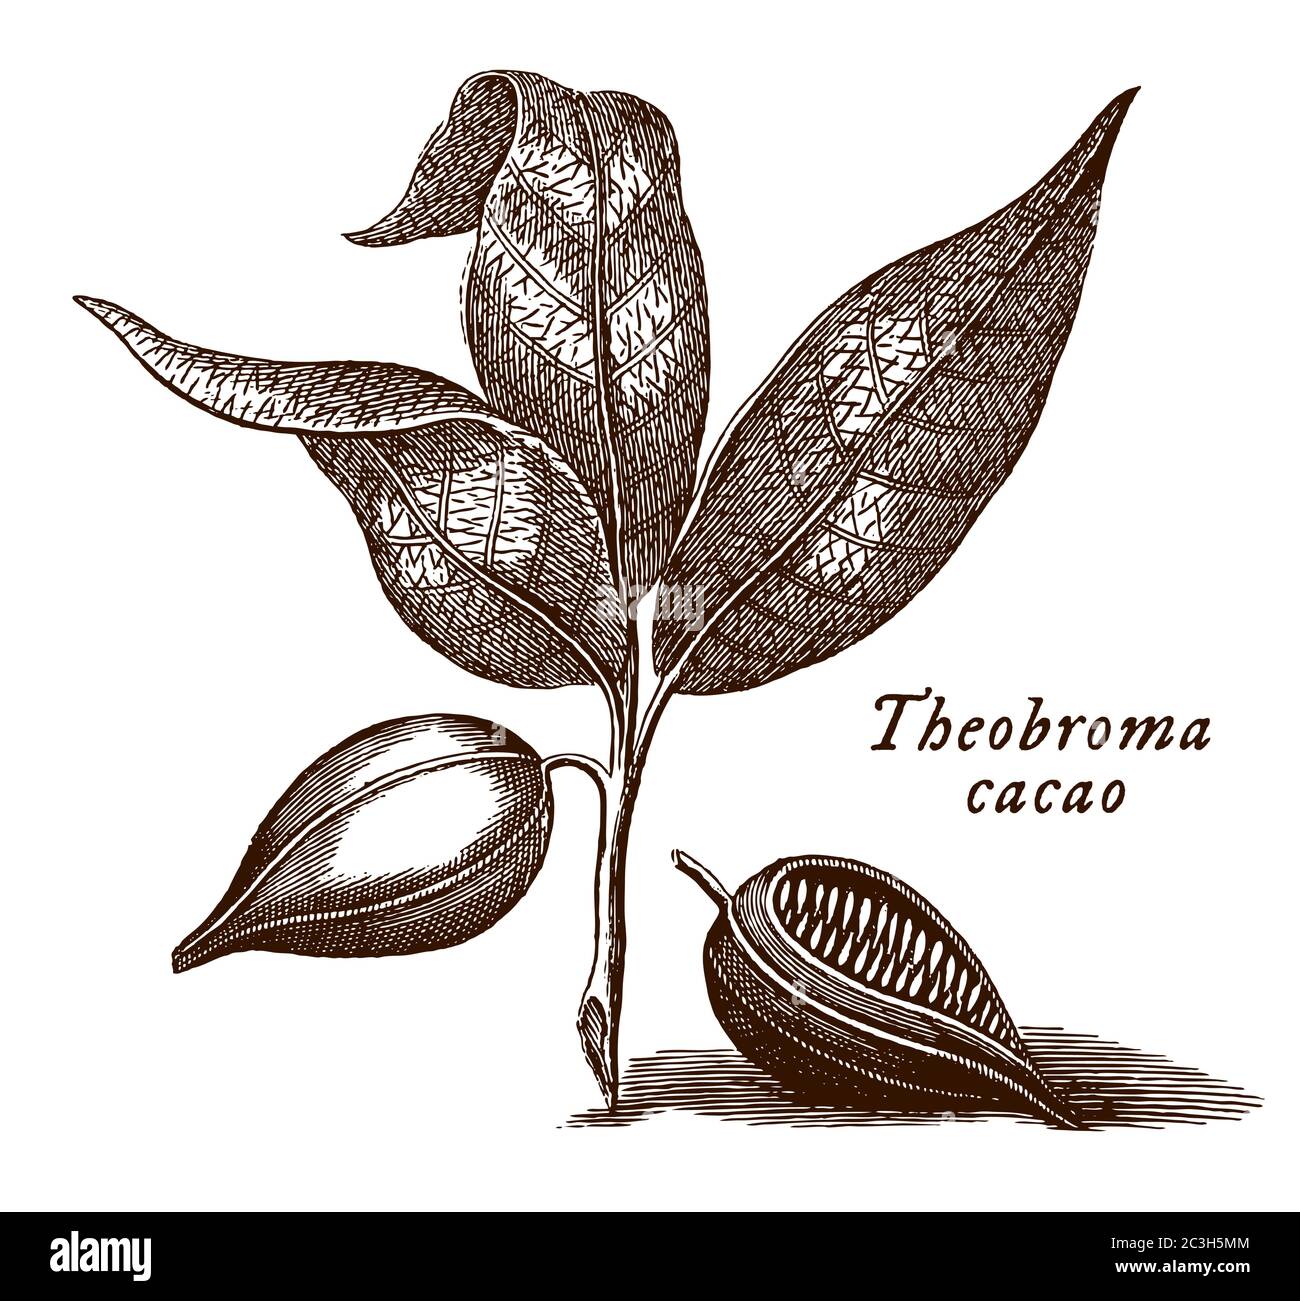 Branche avec les feuilles et les fruits de l'arbre de cacao avec le nom scientifique illustré theobroma cacao, après une gravure du XVIIIe siècle Illustration de Vecteur